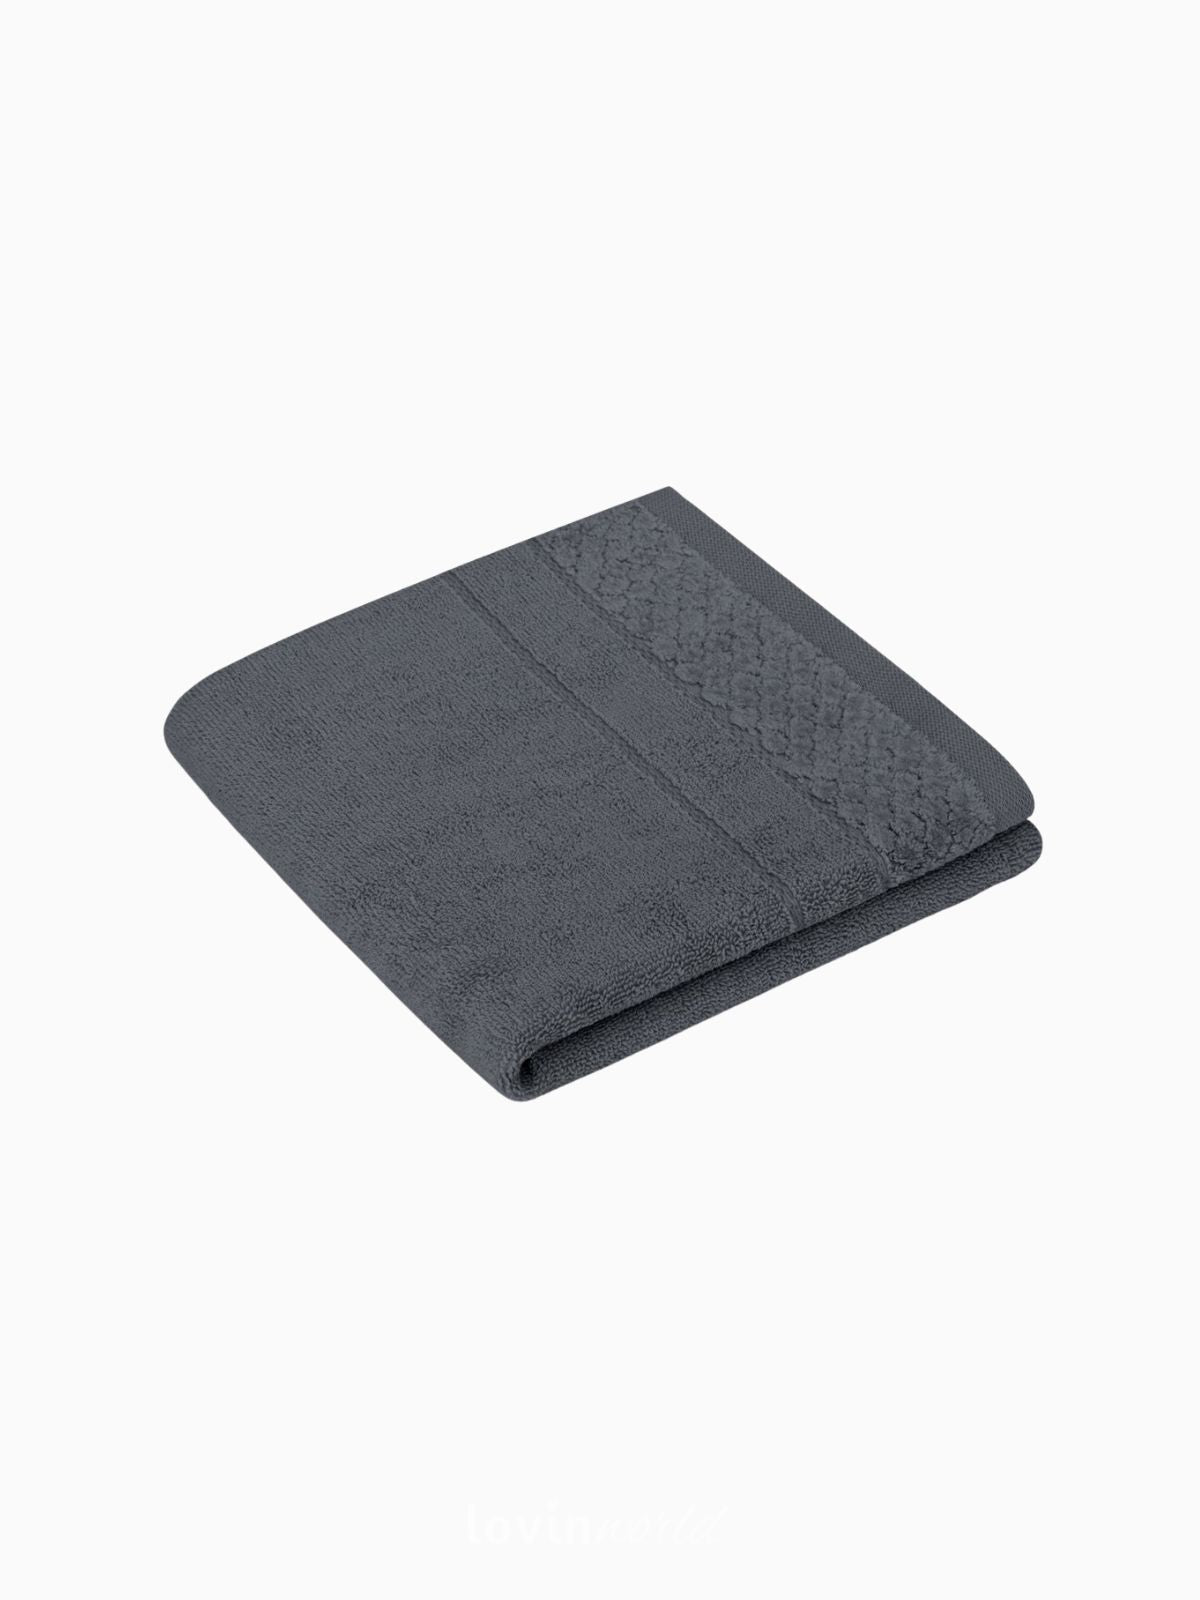 Set 6 Asciugamani da bagno Rubrum in 100% cotone, colore grigio chiaro e scuro-3